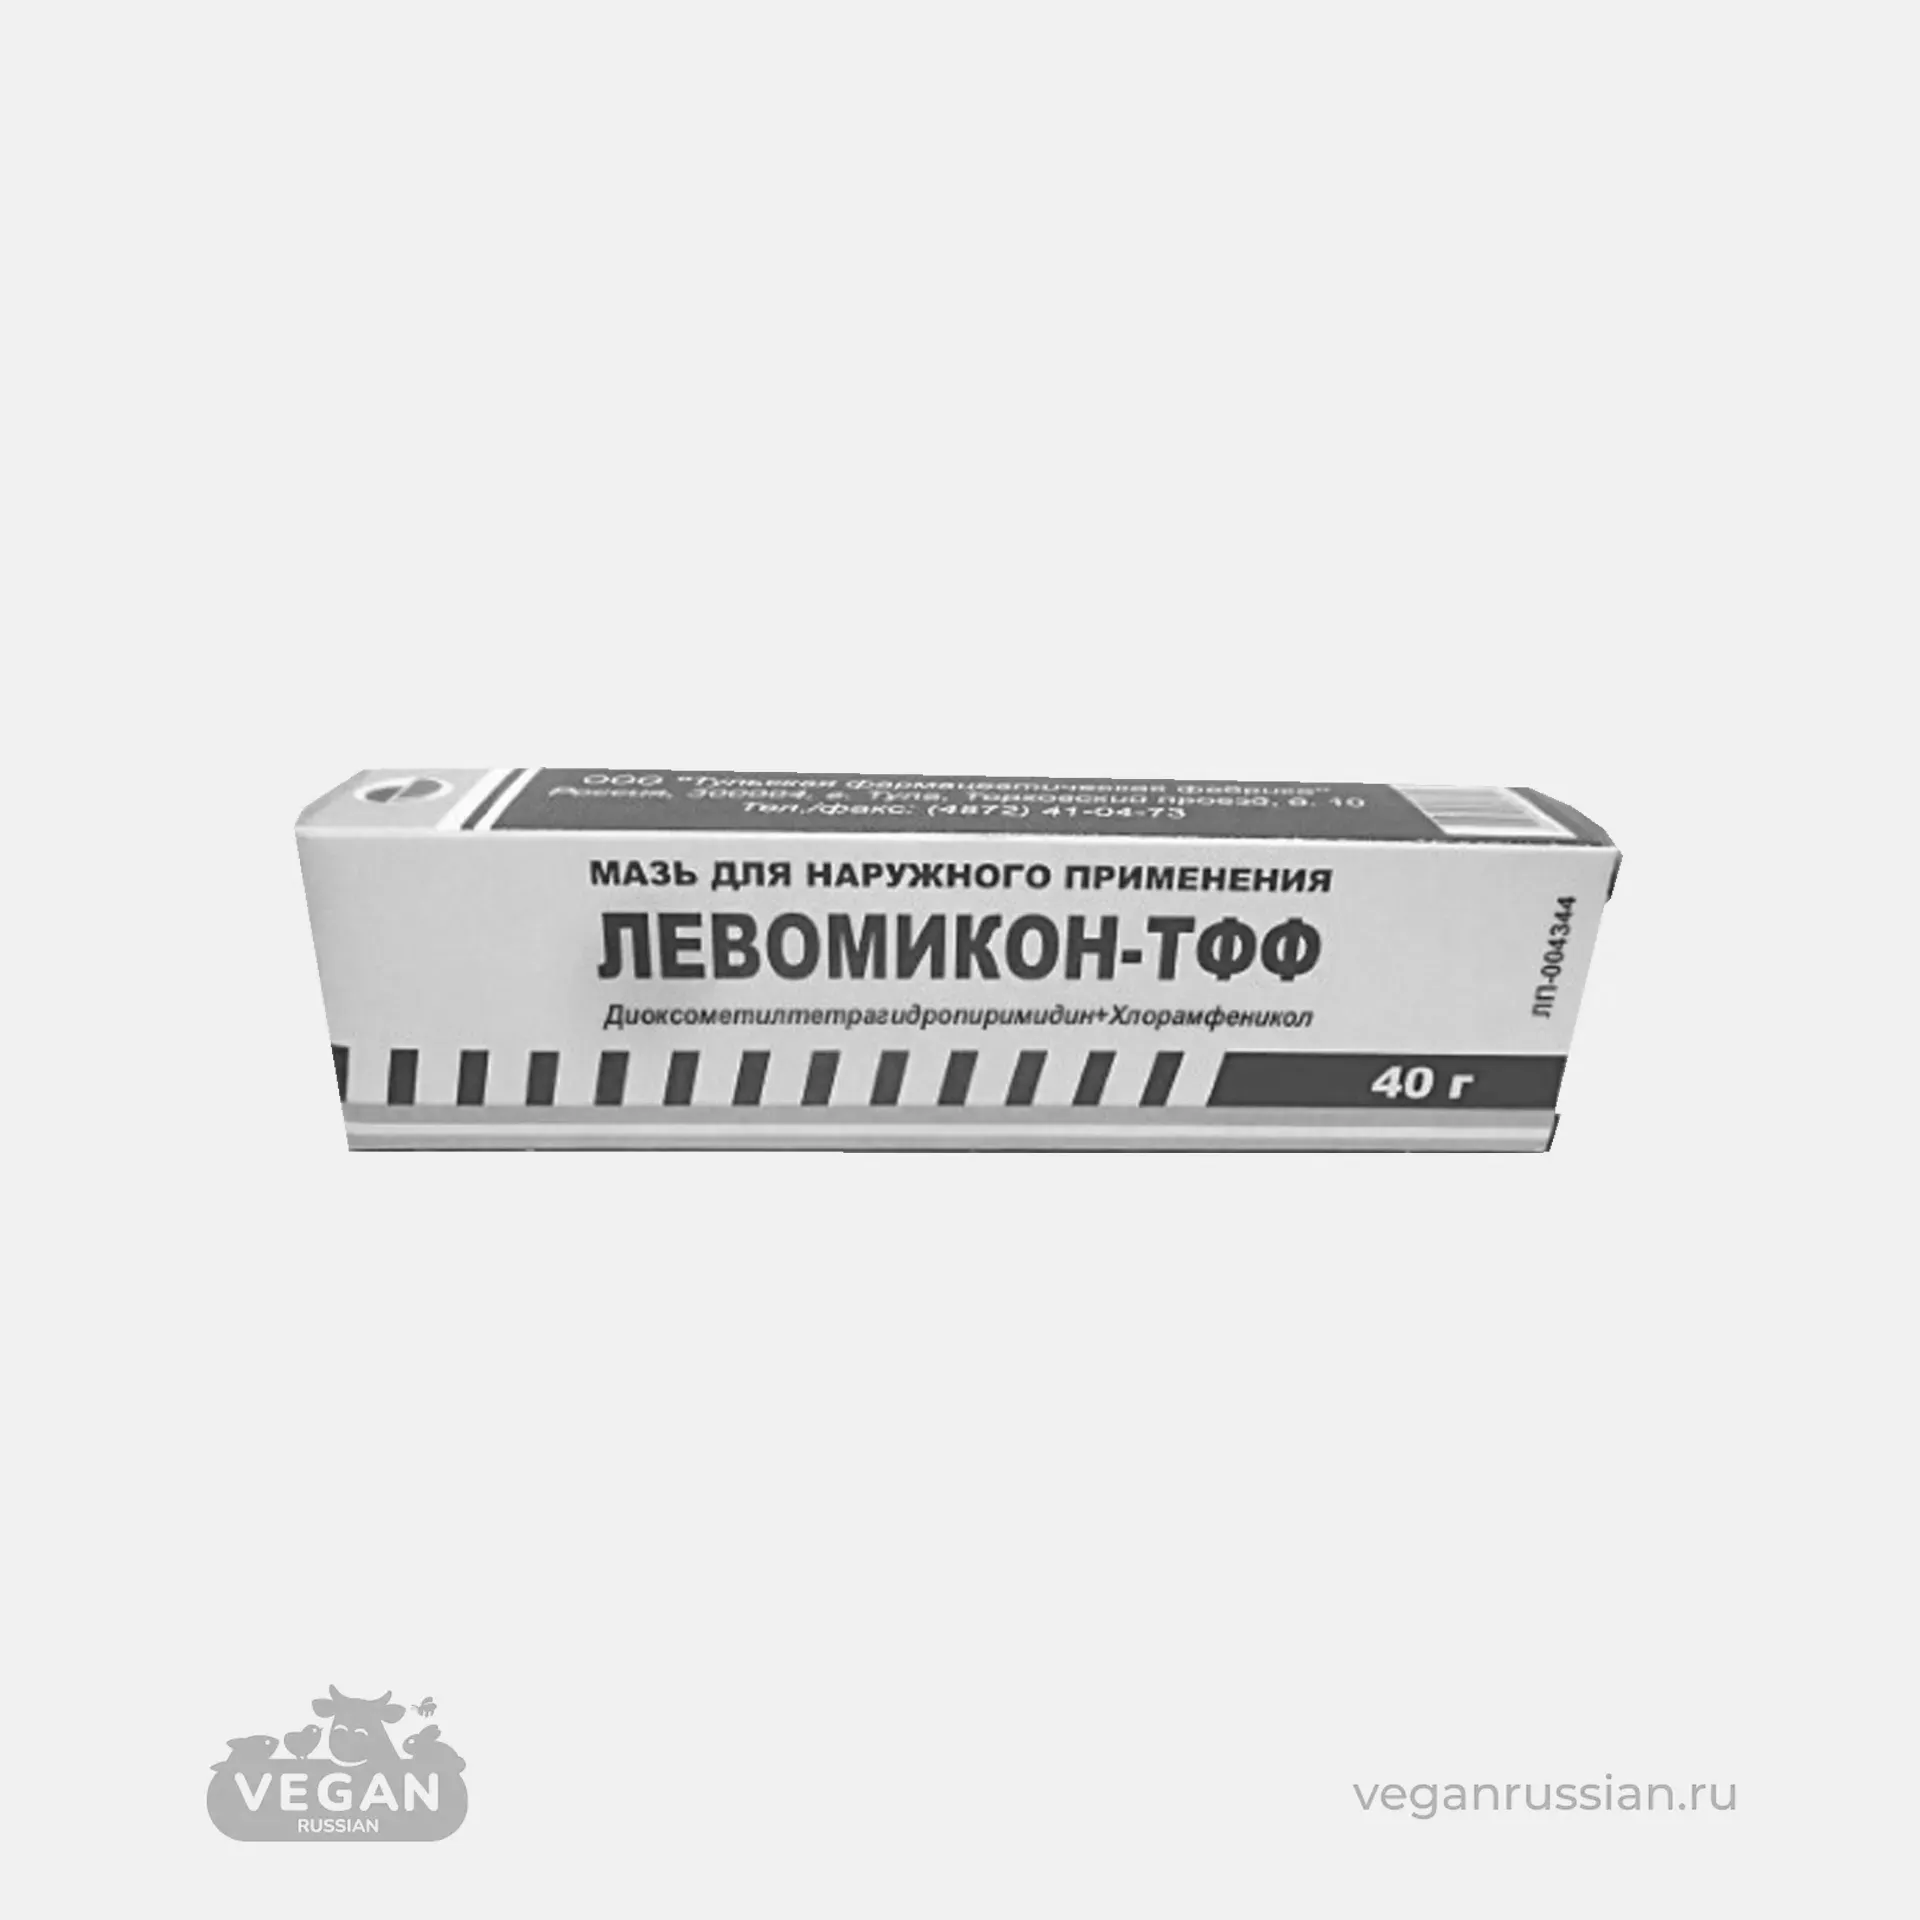 Архив: Левомикон-тфф мазь для наружного применения Тульская фармацевтическая фабрика 40 г